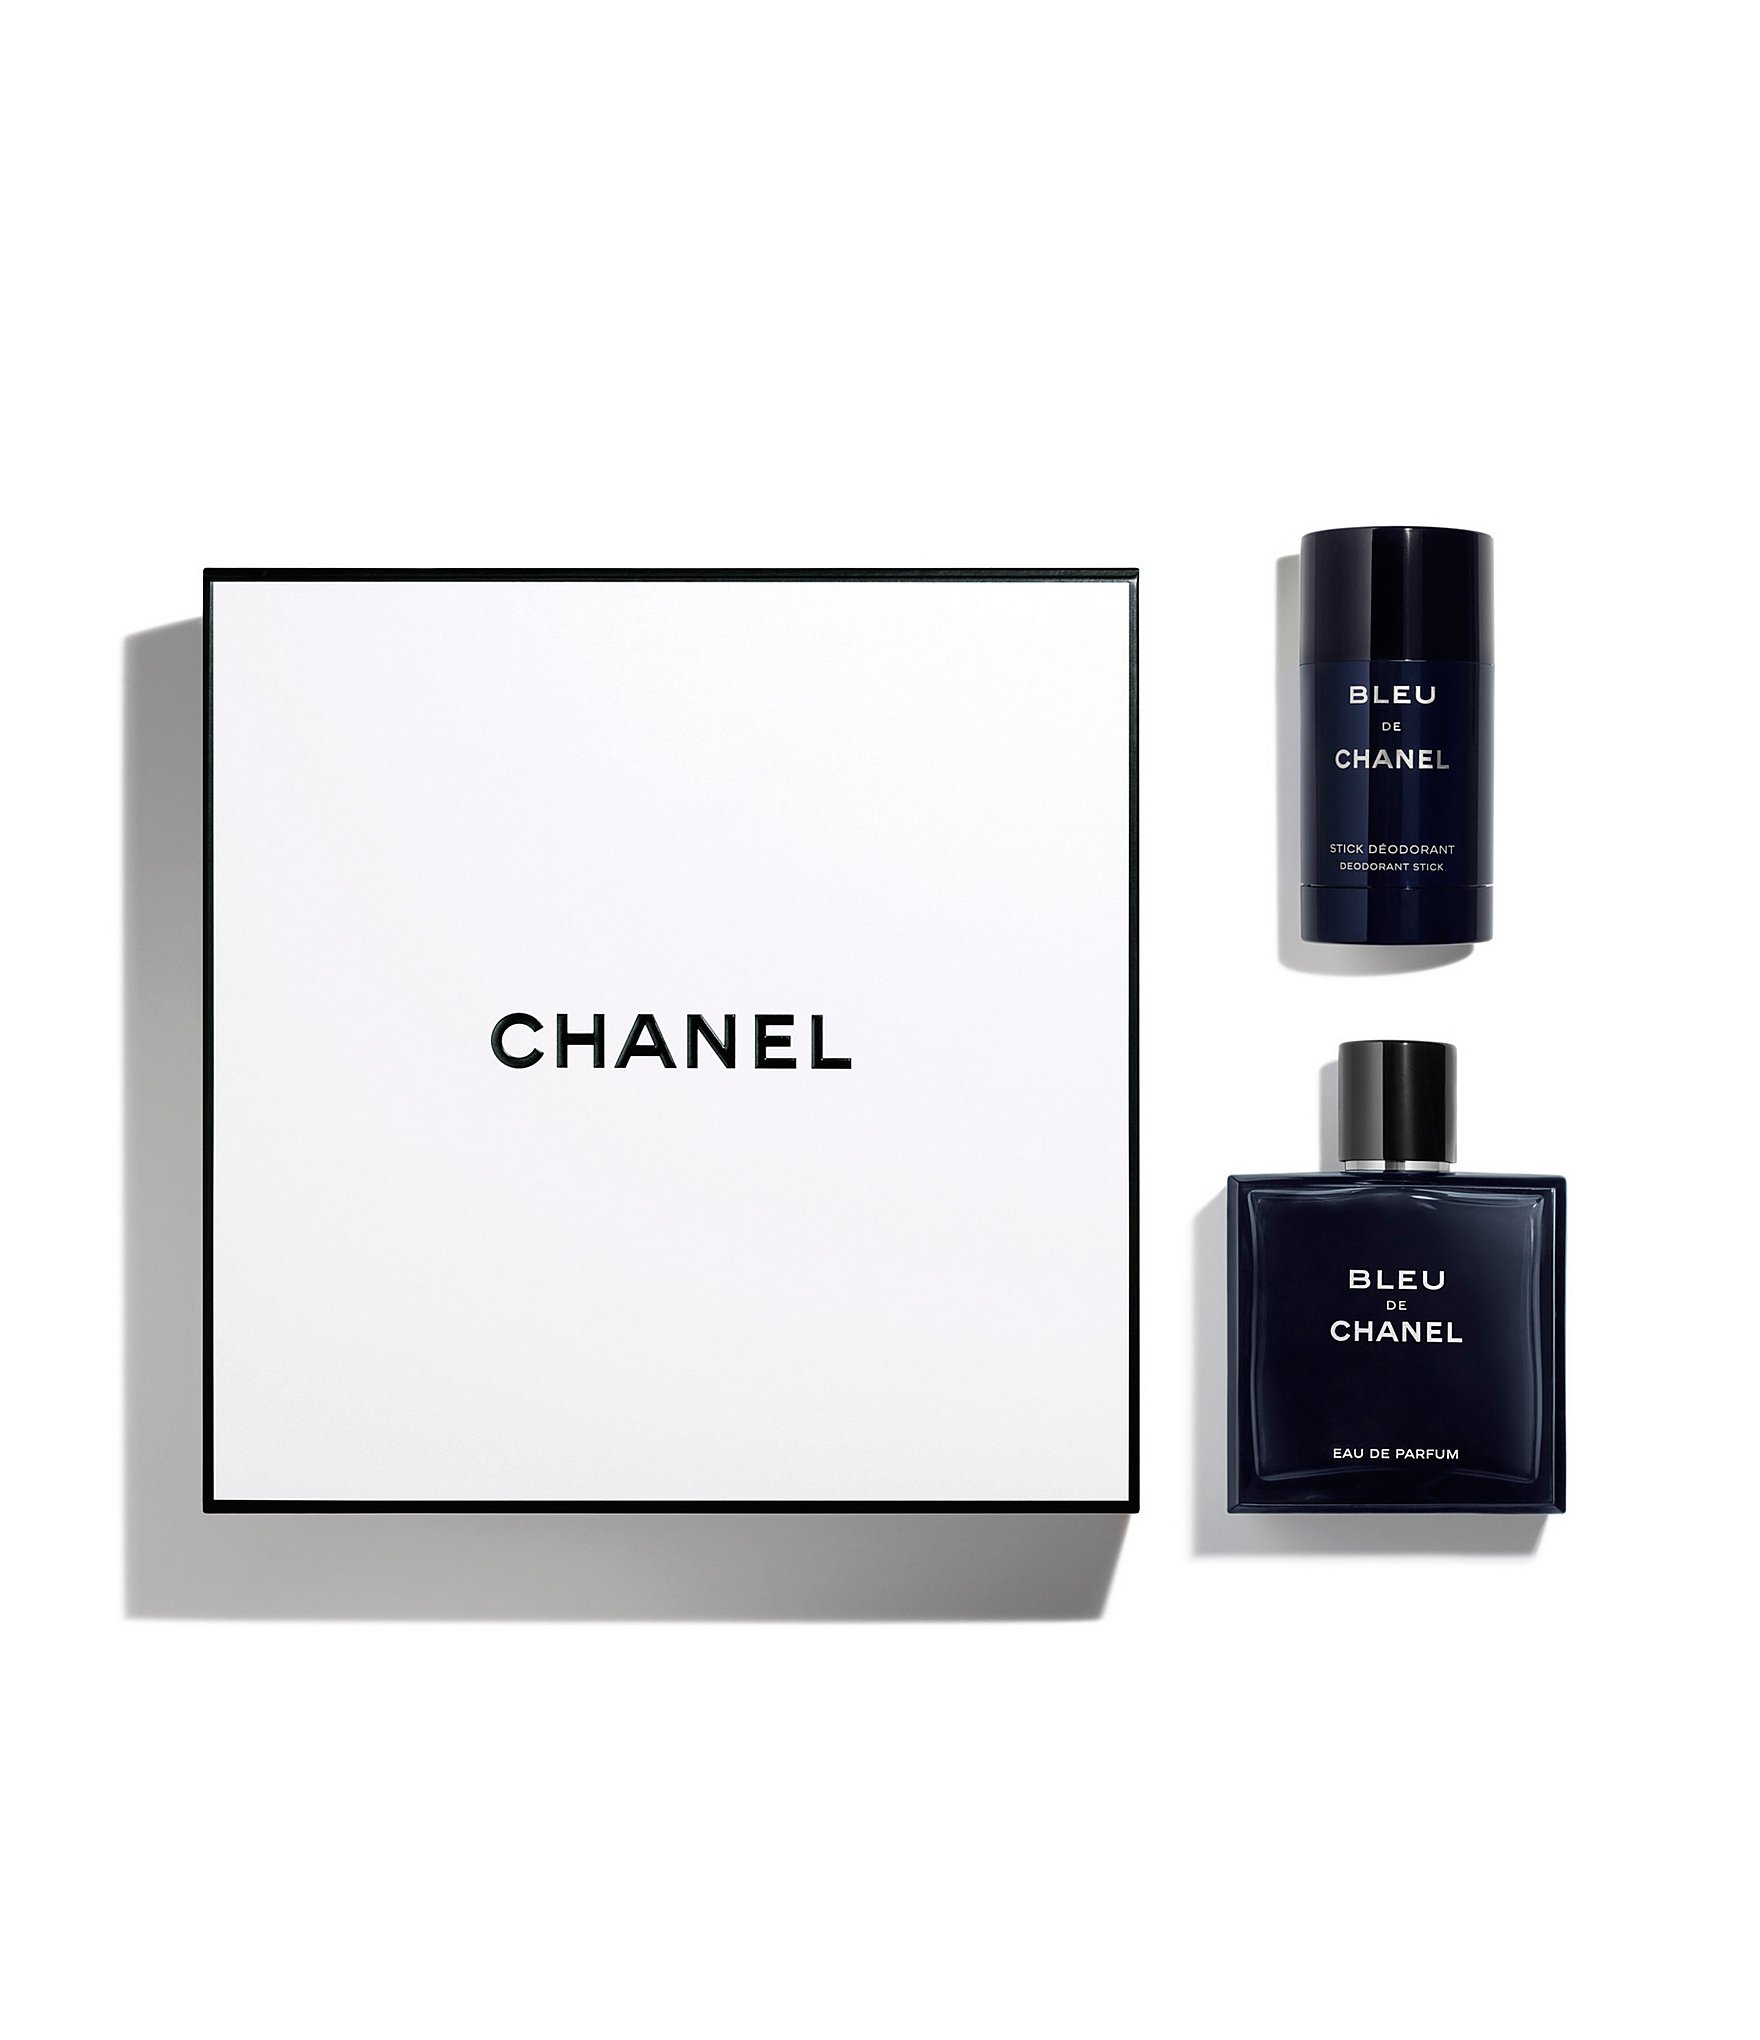 Chanel Bleu de Chanel Eau de Parfum Deodorant Stick Set